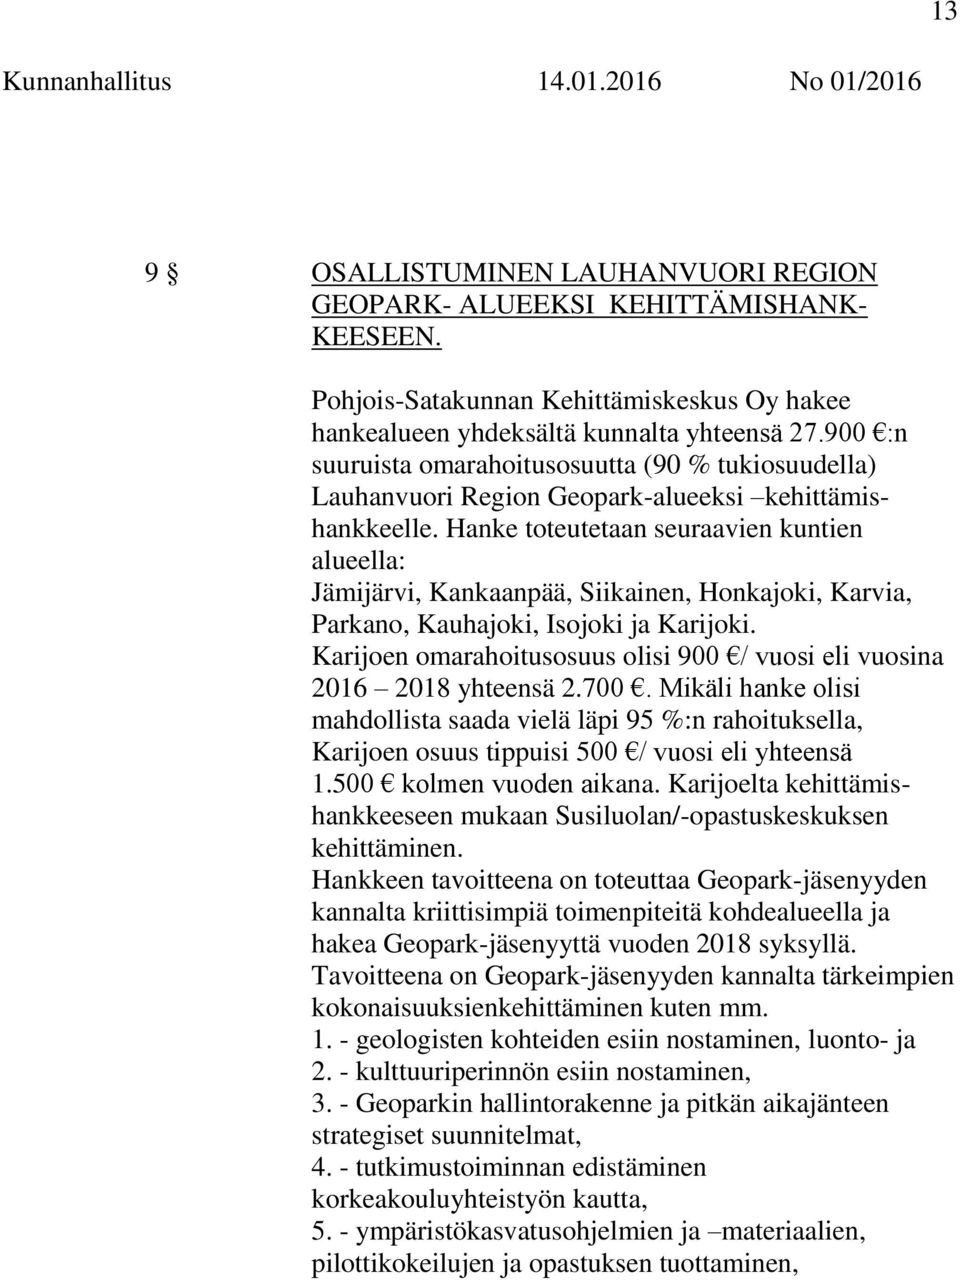 Hanke toteutetaan seuraavien kuntien alueella: Jämijärvi, Kankaanpää, Siikainen, Honkajoki, Karvia, Parkano, Kauhajoki, Isojoki ja Karijoki.